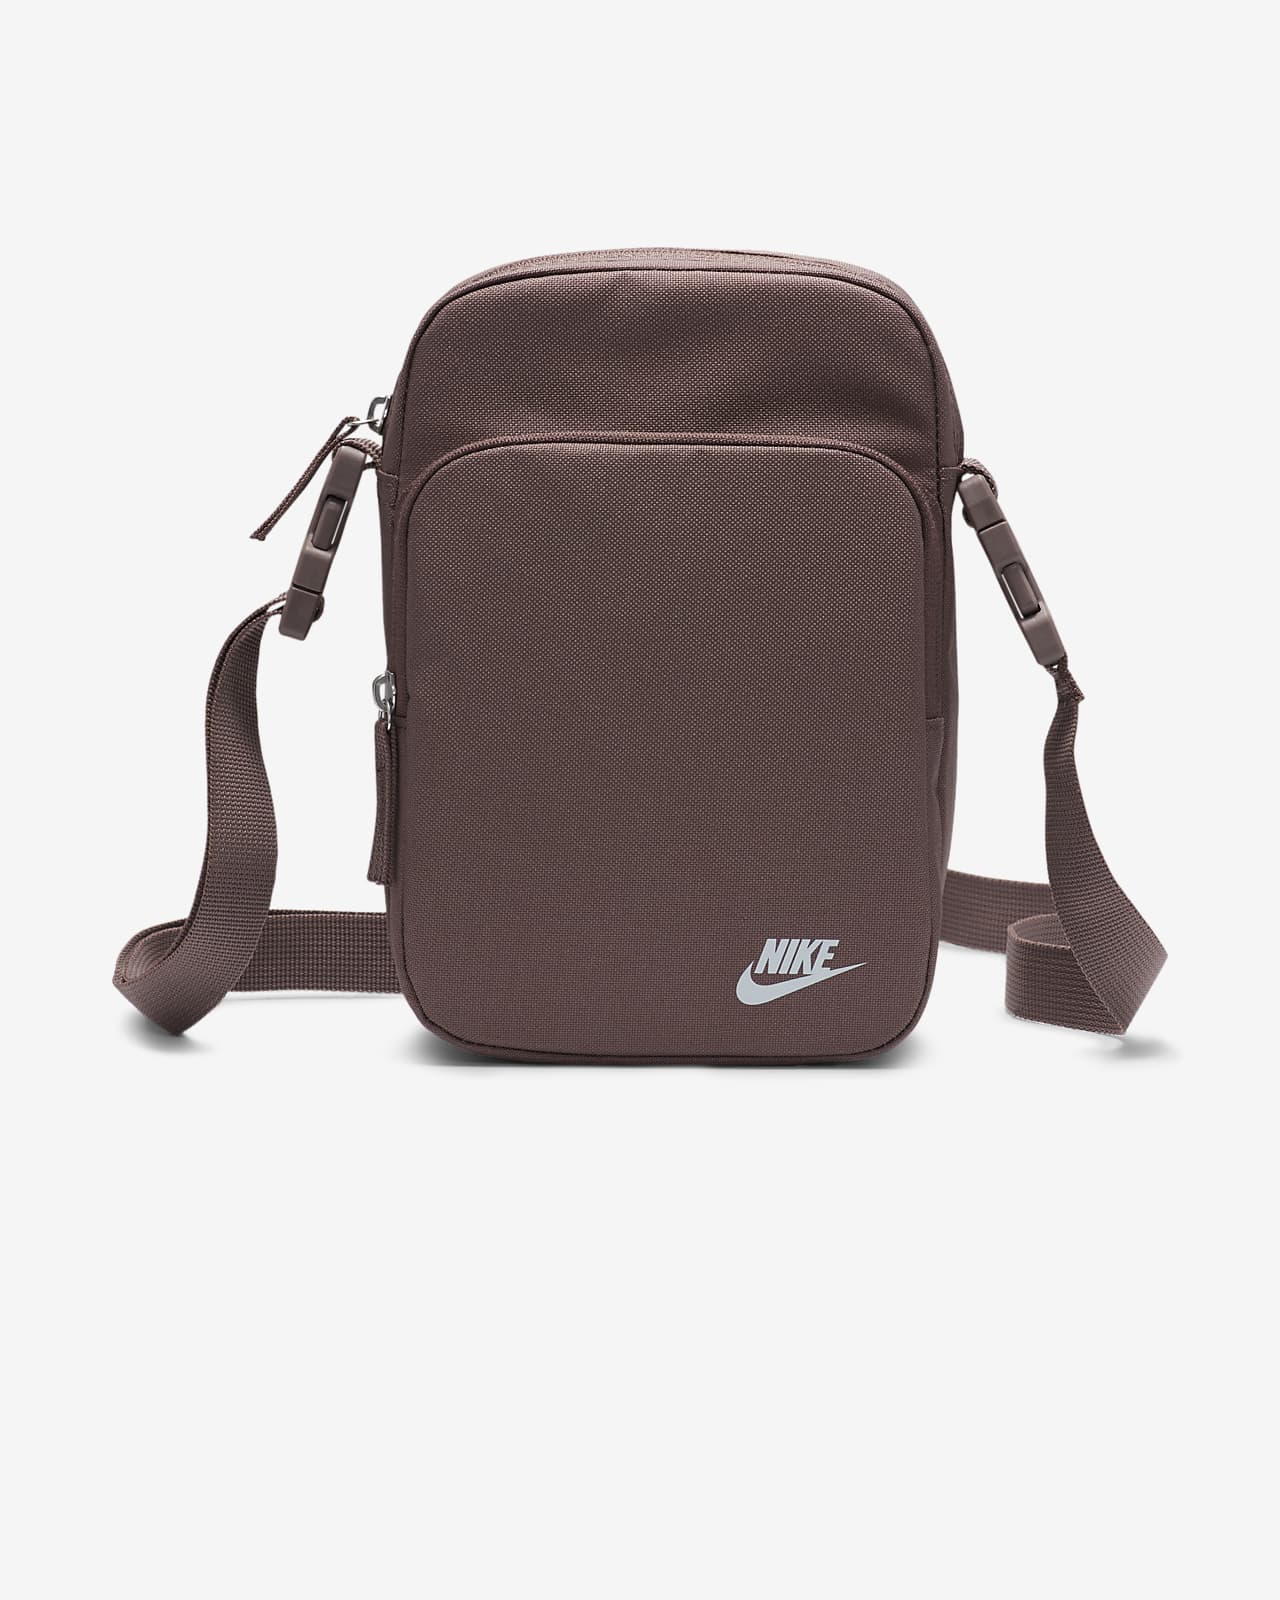 Buy Nike Sling Bag Online In India -  India